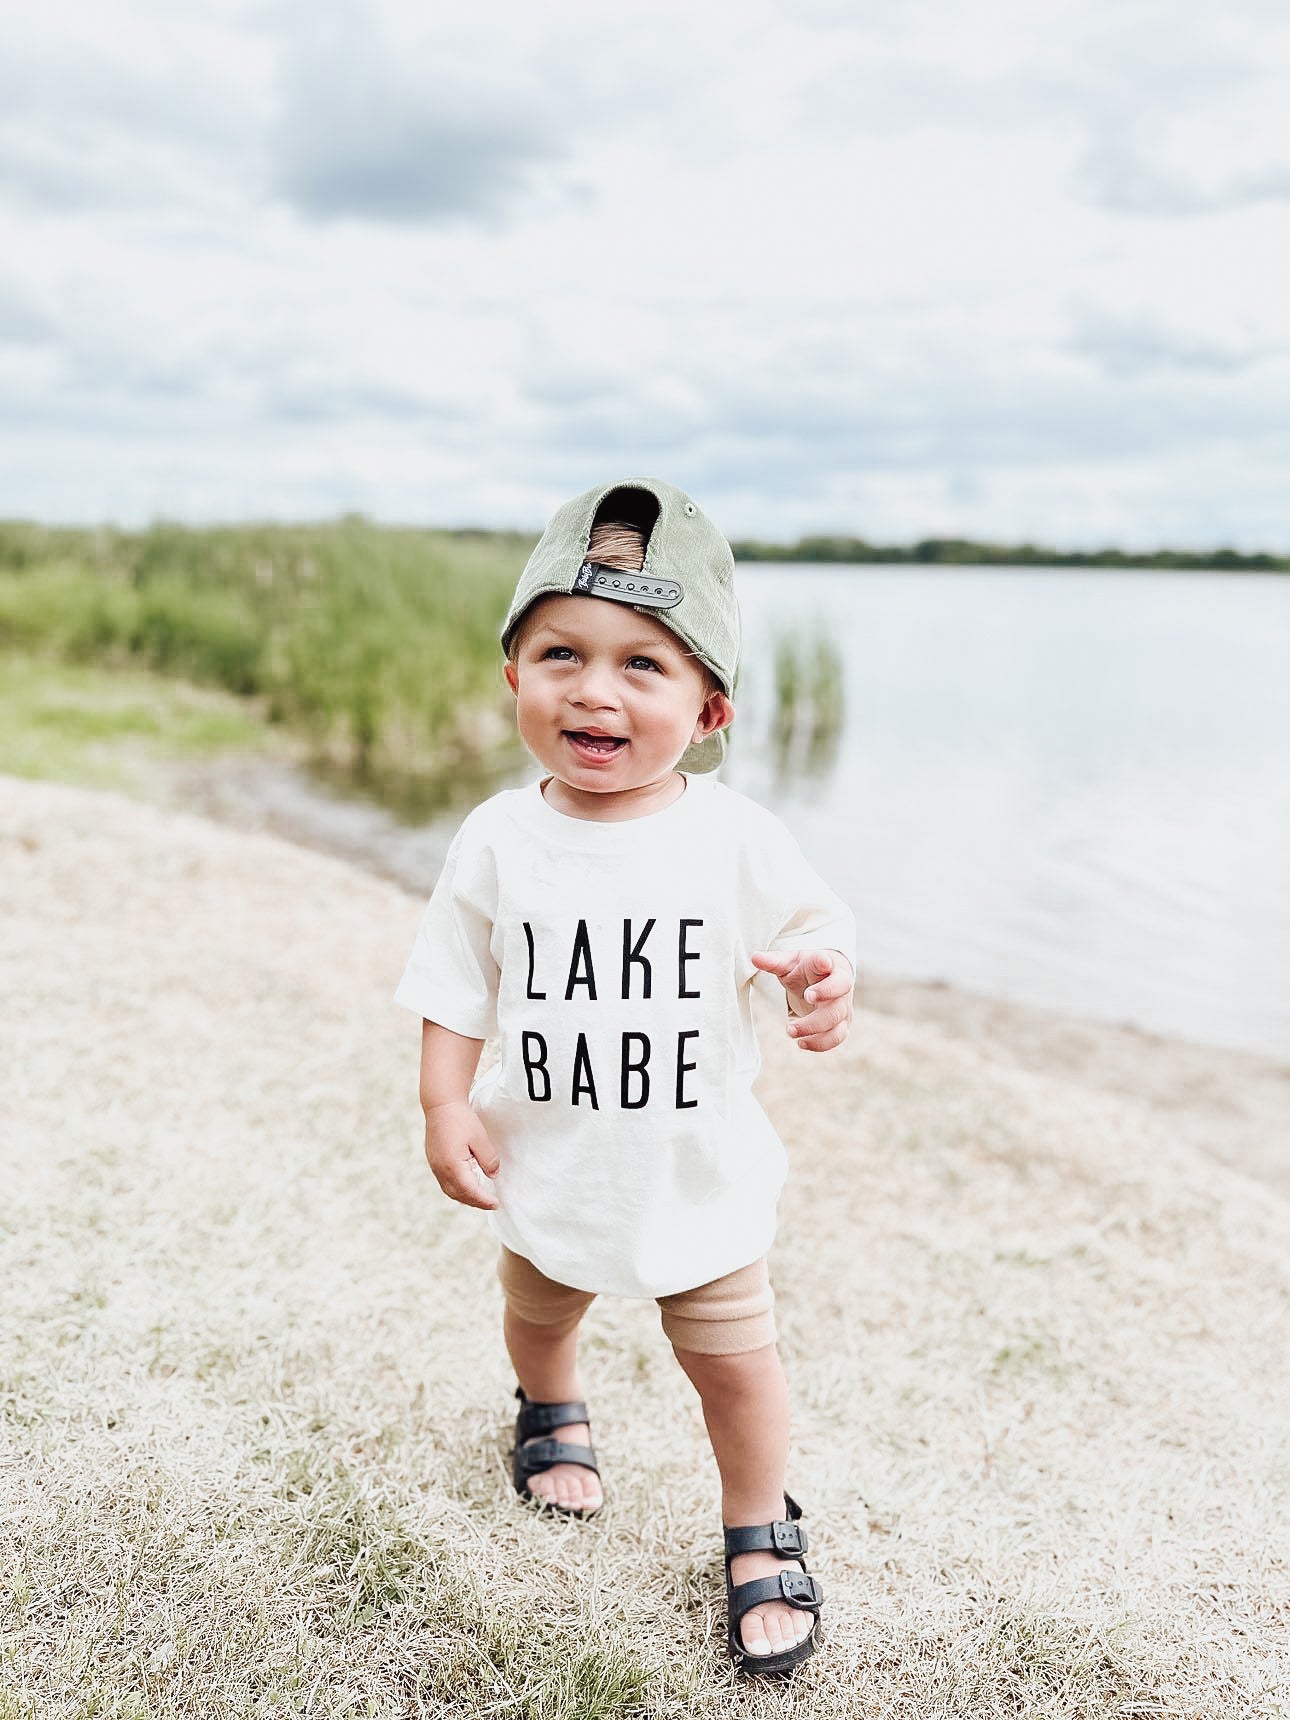 Lake Dude |  Ivory Kids Tee  |  Toddler T-shirt